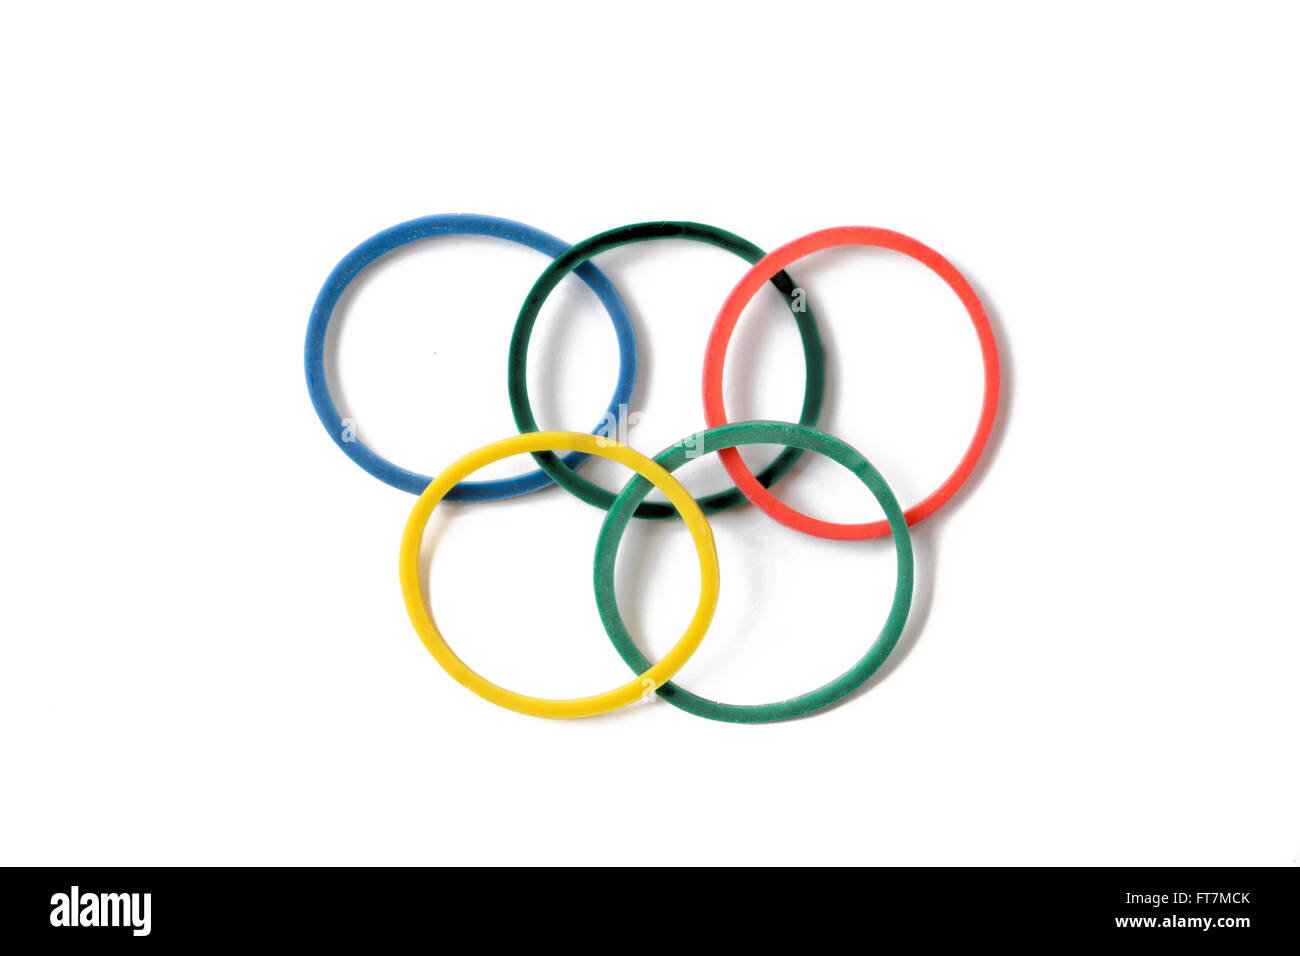 Elastico anelli olimpici isolati su sfondo bianco Foto Stock